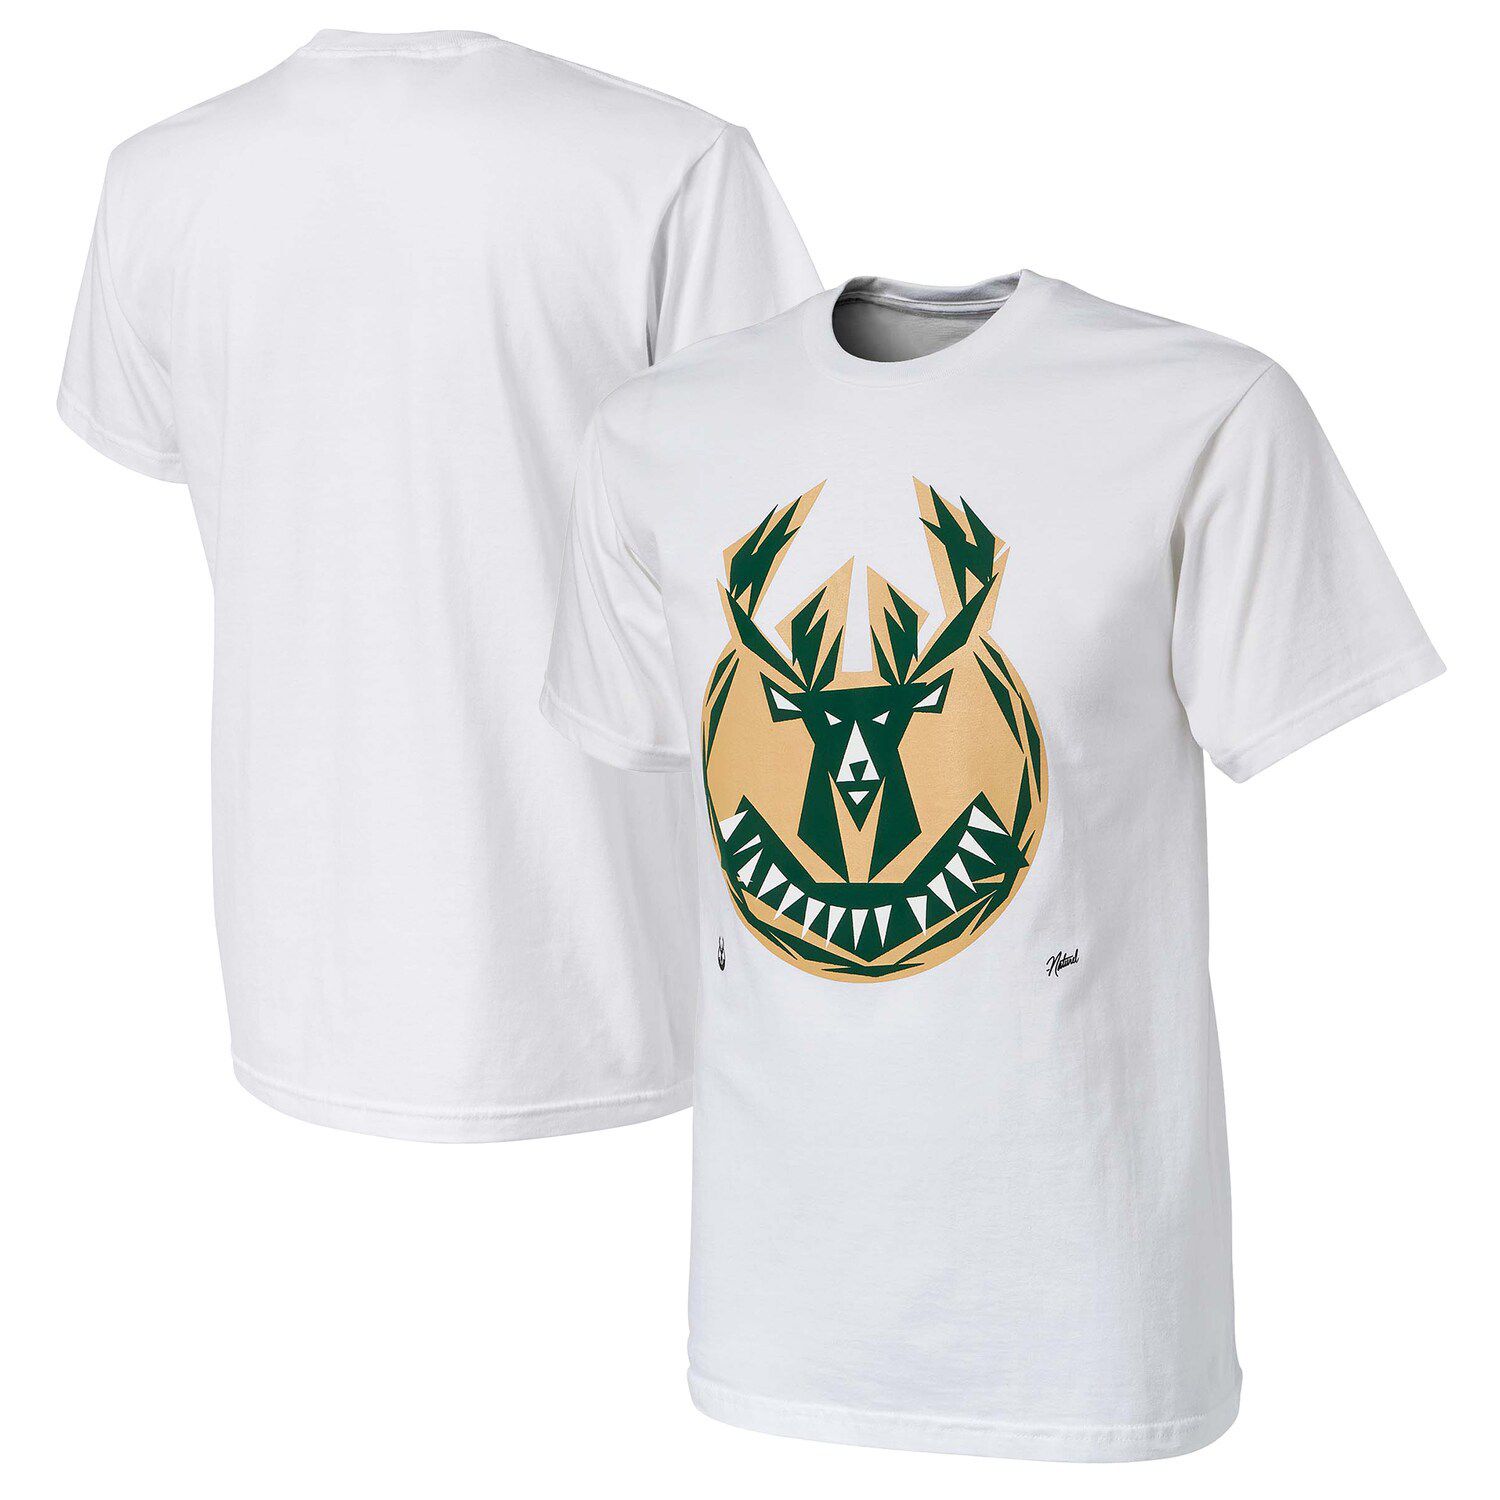 Мужская белая футболка NBA x Naturel Milwaukee Bucks без идентификатора вызывающего абонента